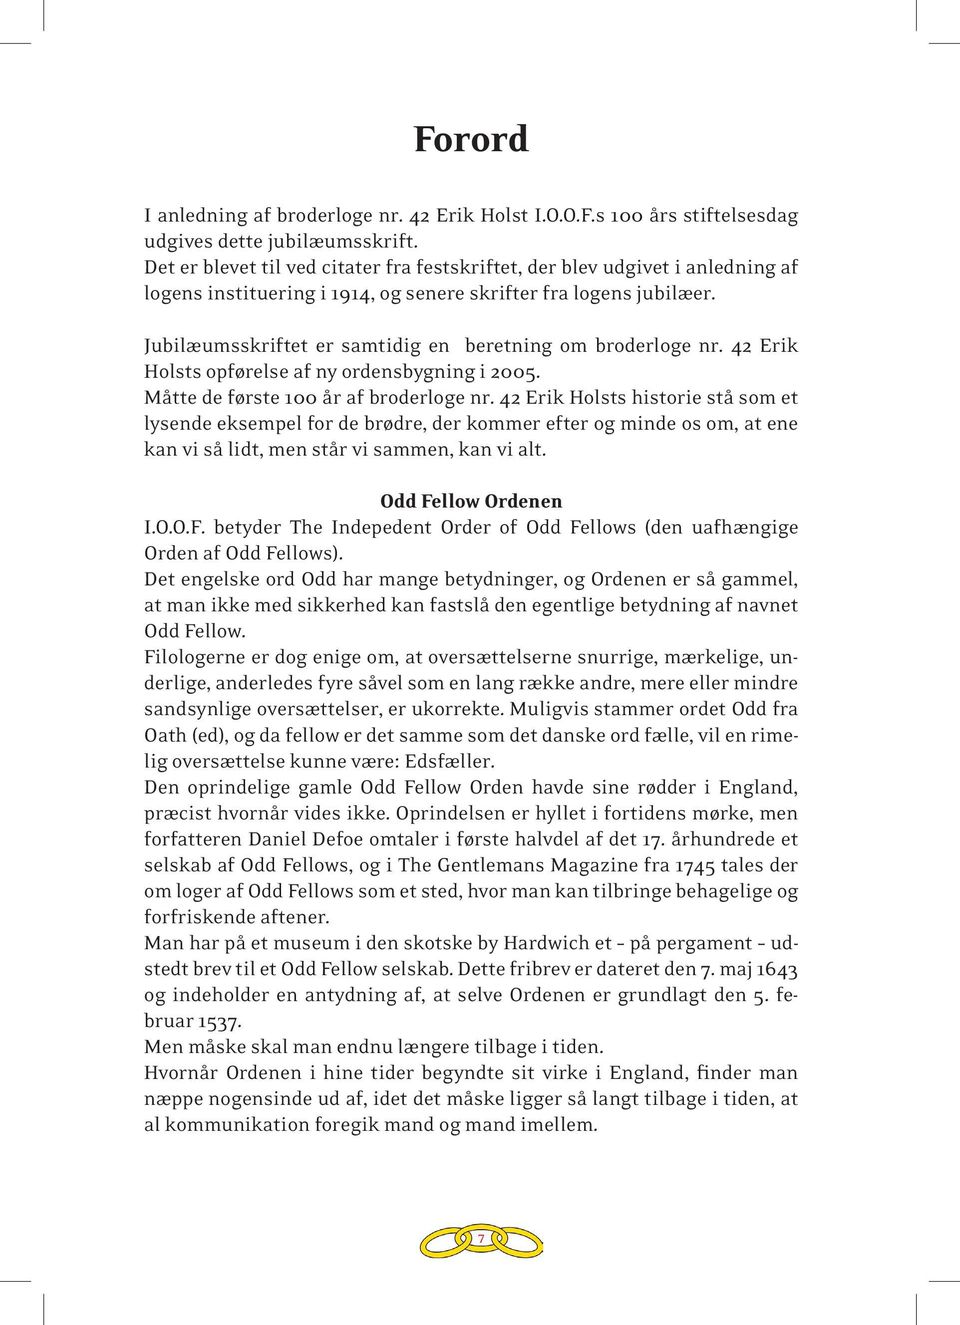 Jubilæumsskriftet er samtidig en beretning om broderloge nr. 42 Erik Holsts opførelse af ny ordensbygning i 2005. Måtte de første 100 år af broderloge nr.